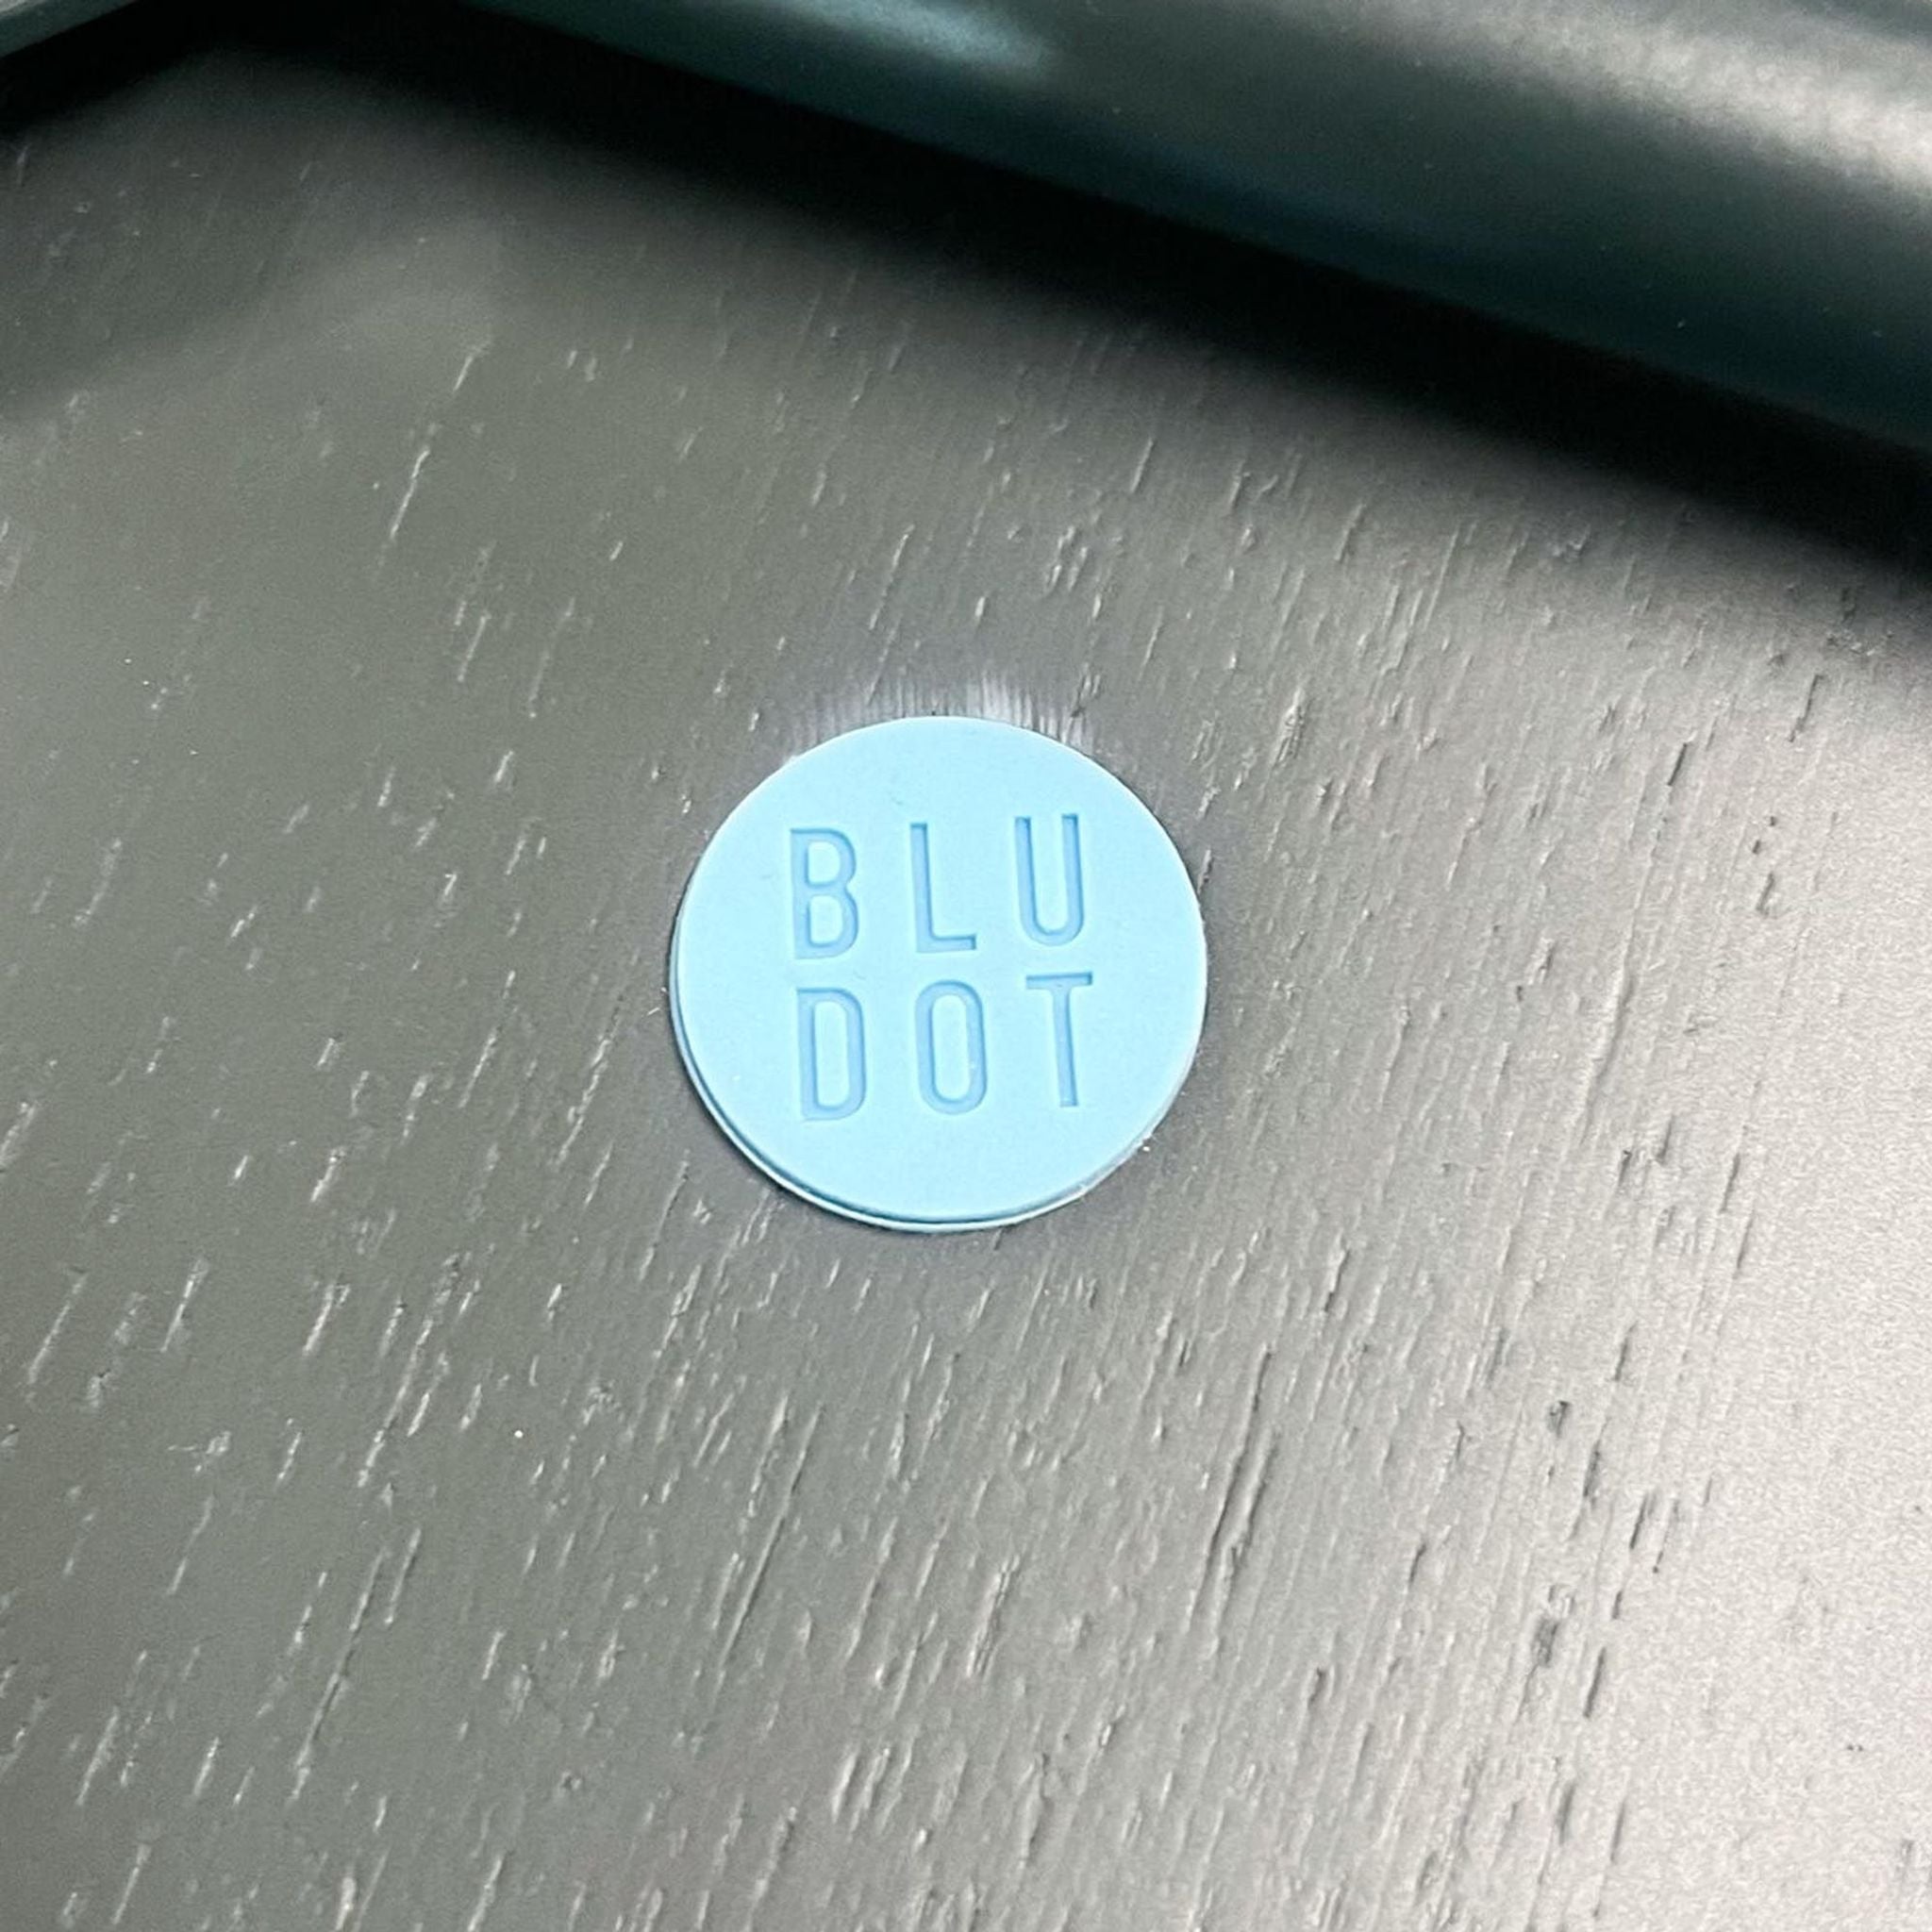 Blu Dot Clean Cut Chair